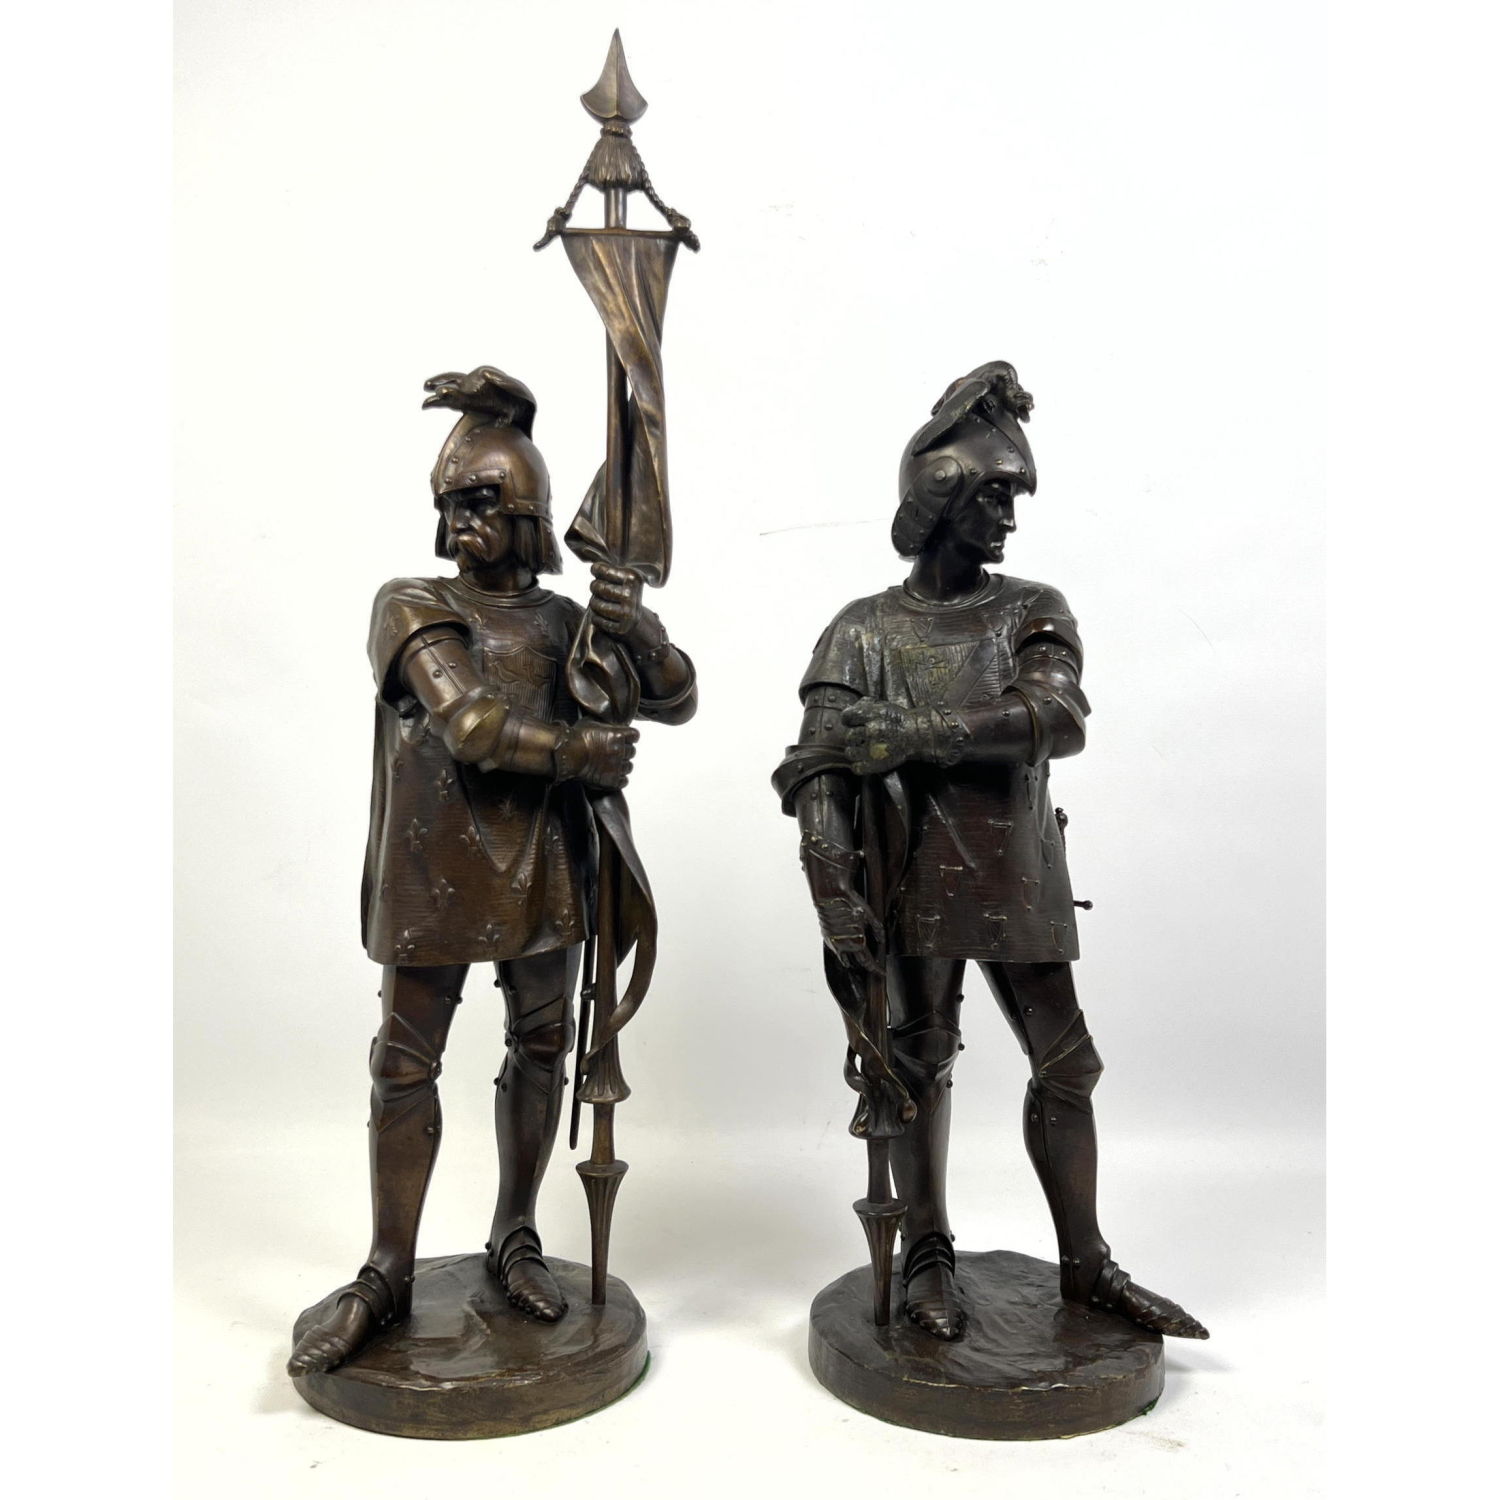 Two Metal Soldier Warrior Figures Sculptures.